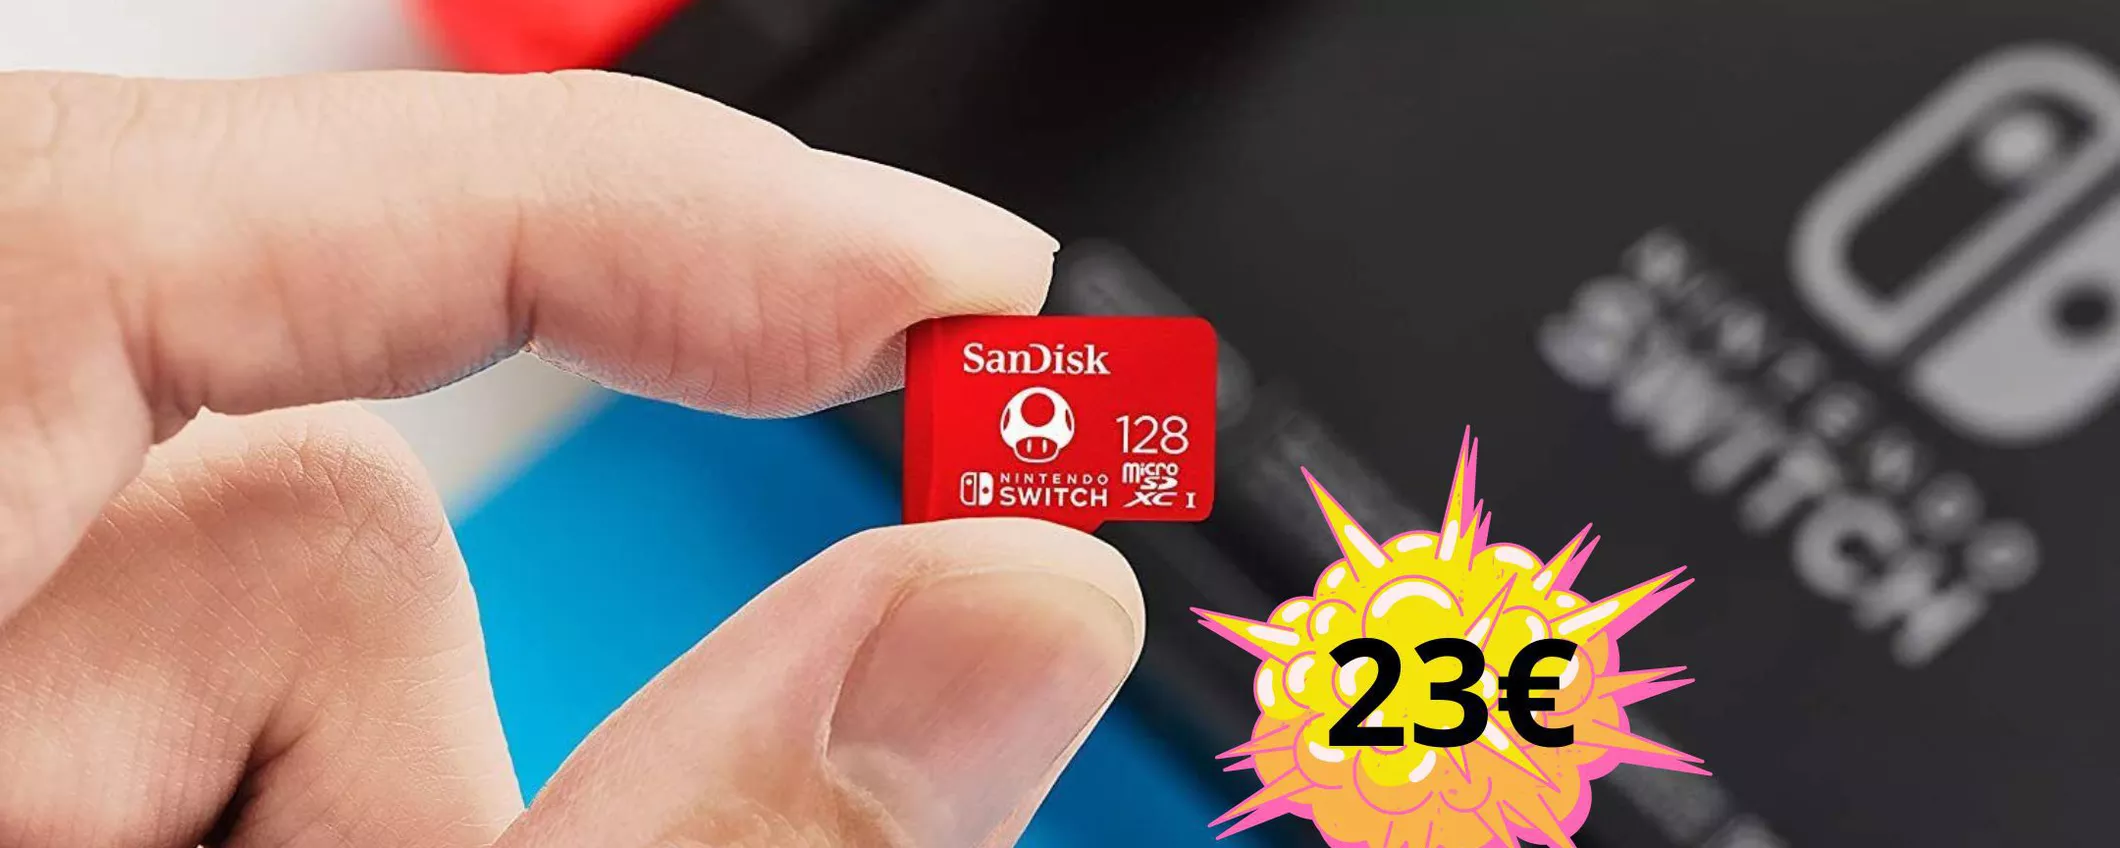 Su eBay la Memory Card da 128 GB per Nintendo Switch la paghi solo 23 euro: più ne prendi più risparmi!